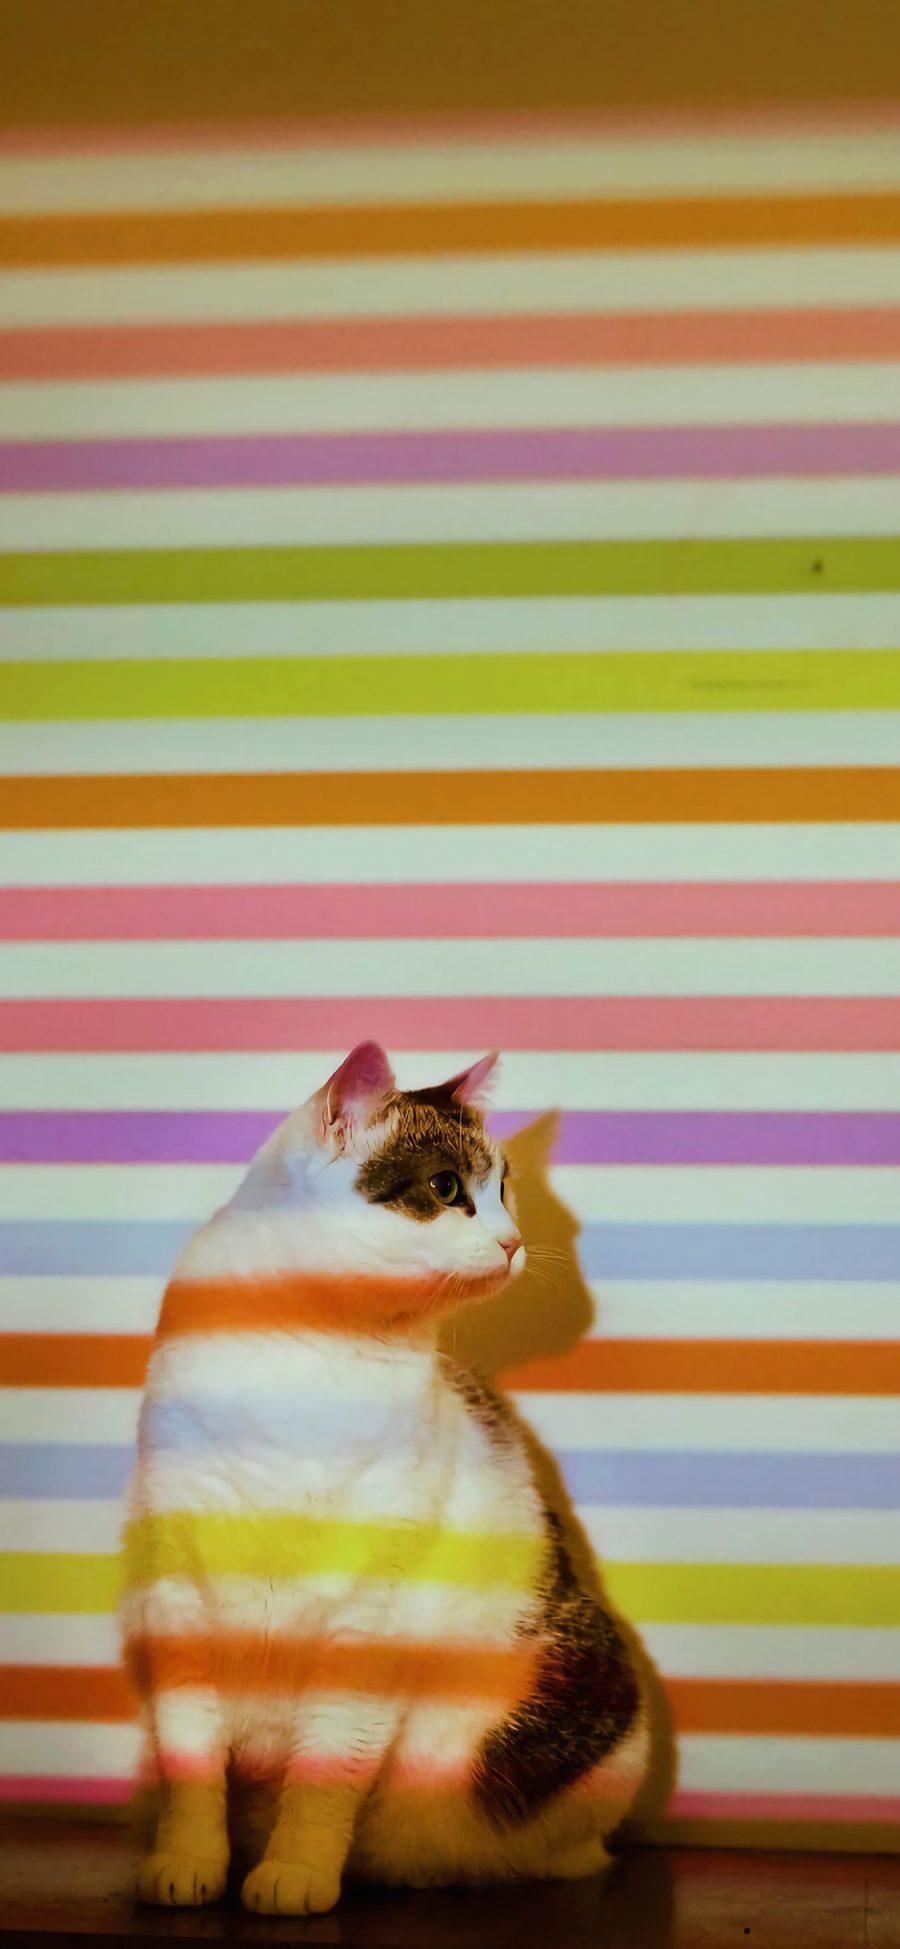 [2436×1125]猫咪 喵星人 色彩 条纹 宠物 苹果手机壁纸图片